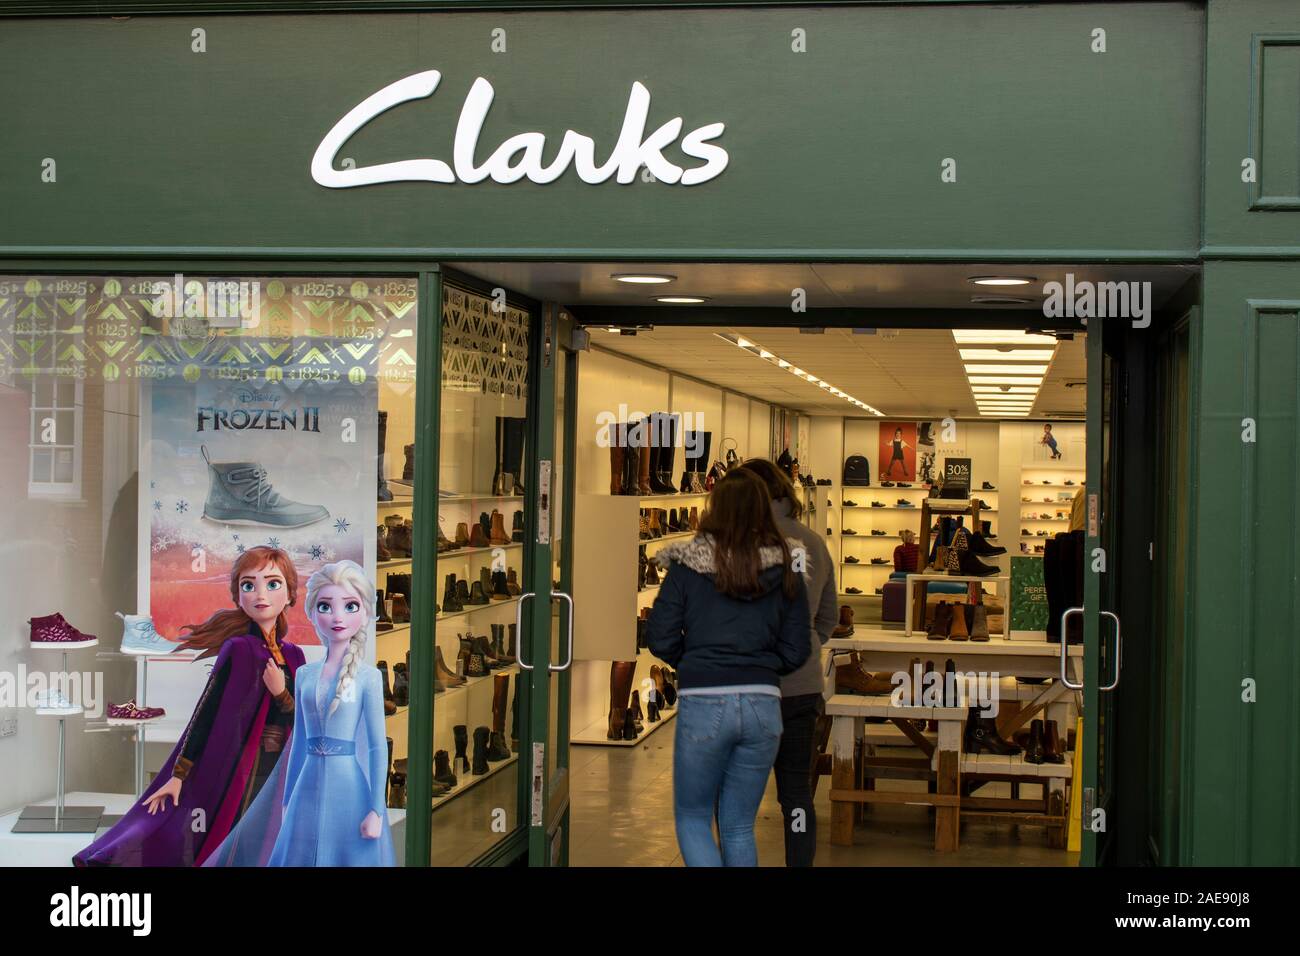 clarks shoe store memphis